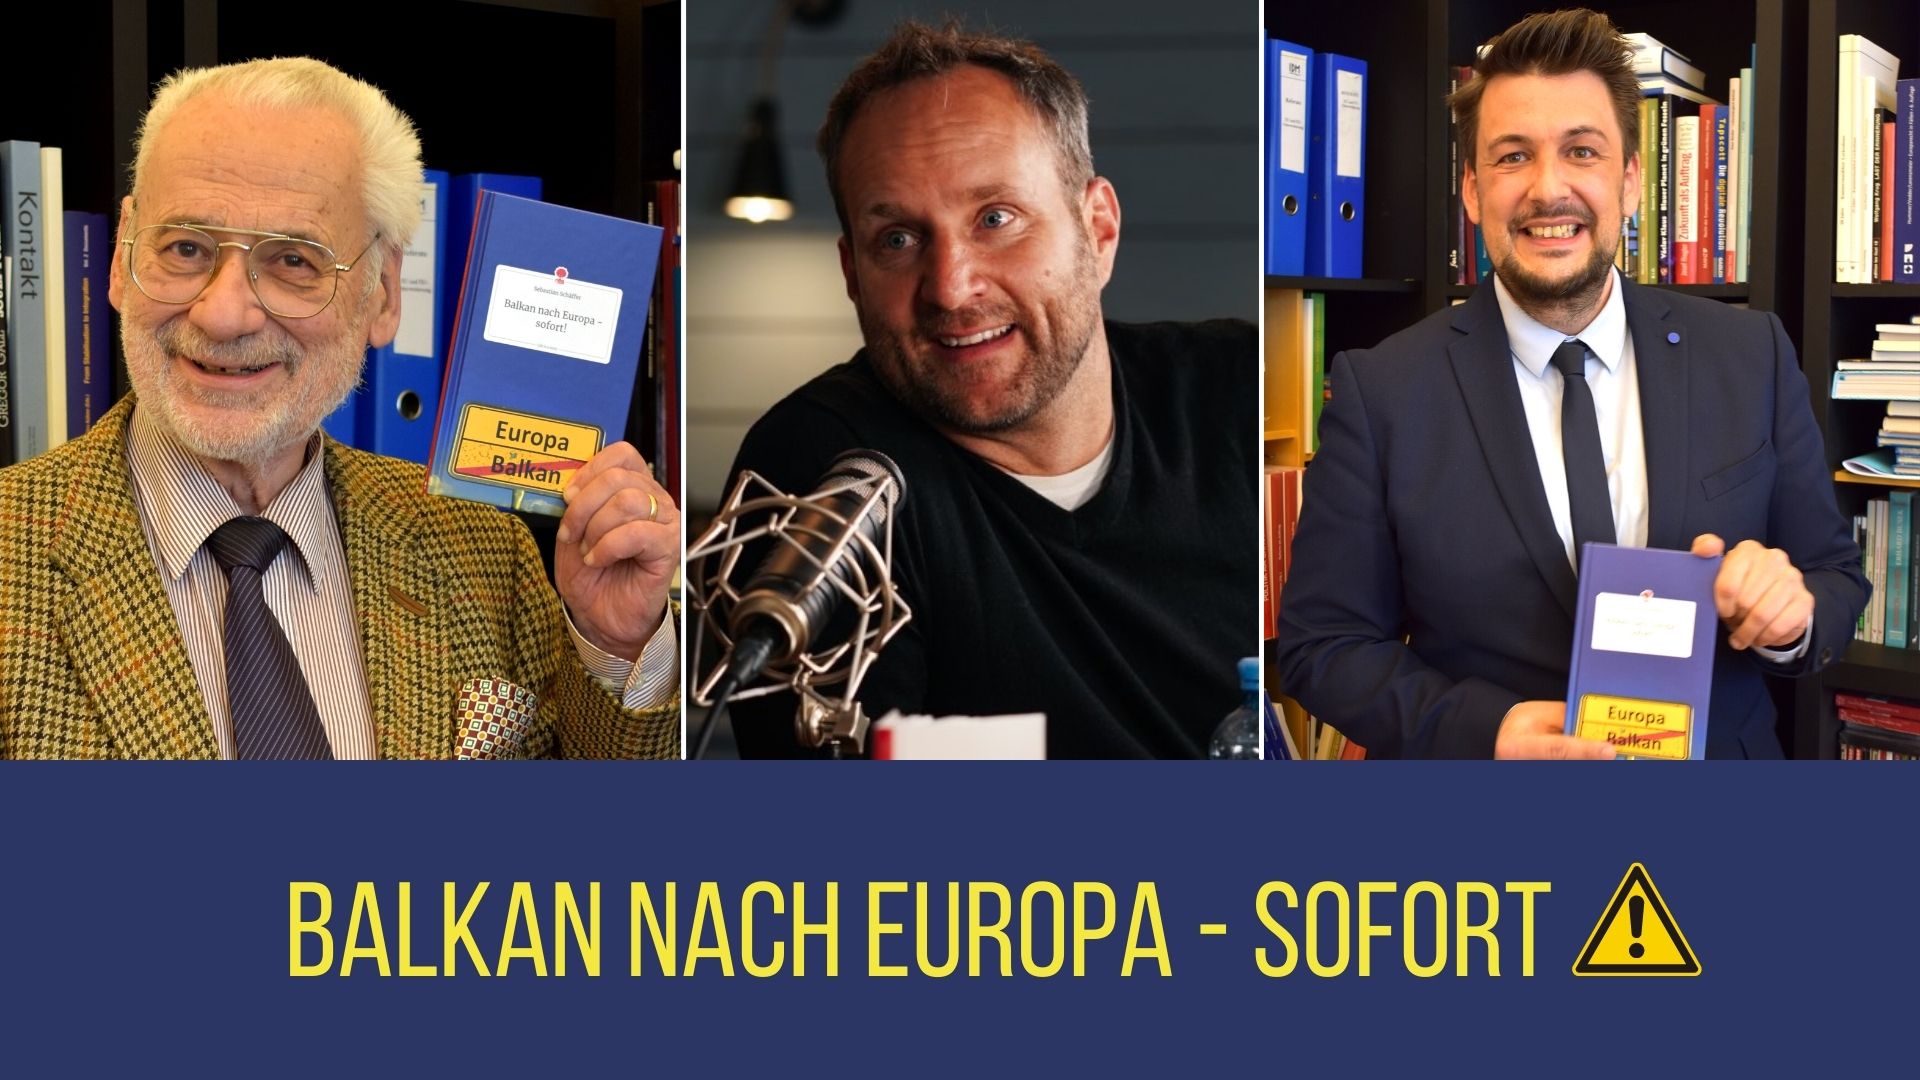 "Balkan nach Europa - sofort!" - Buchpräsentation und Diskussion mit Matthias Strolz